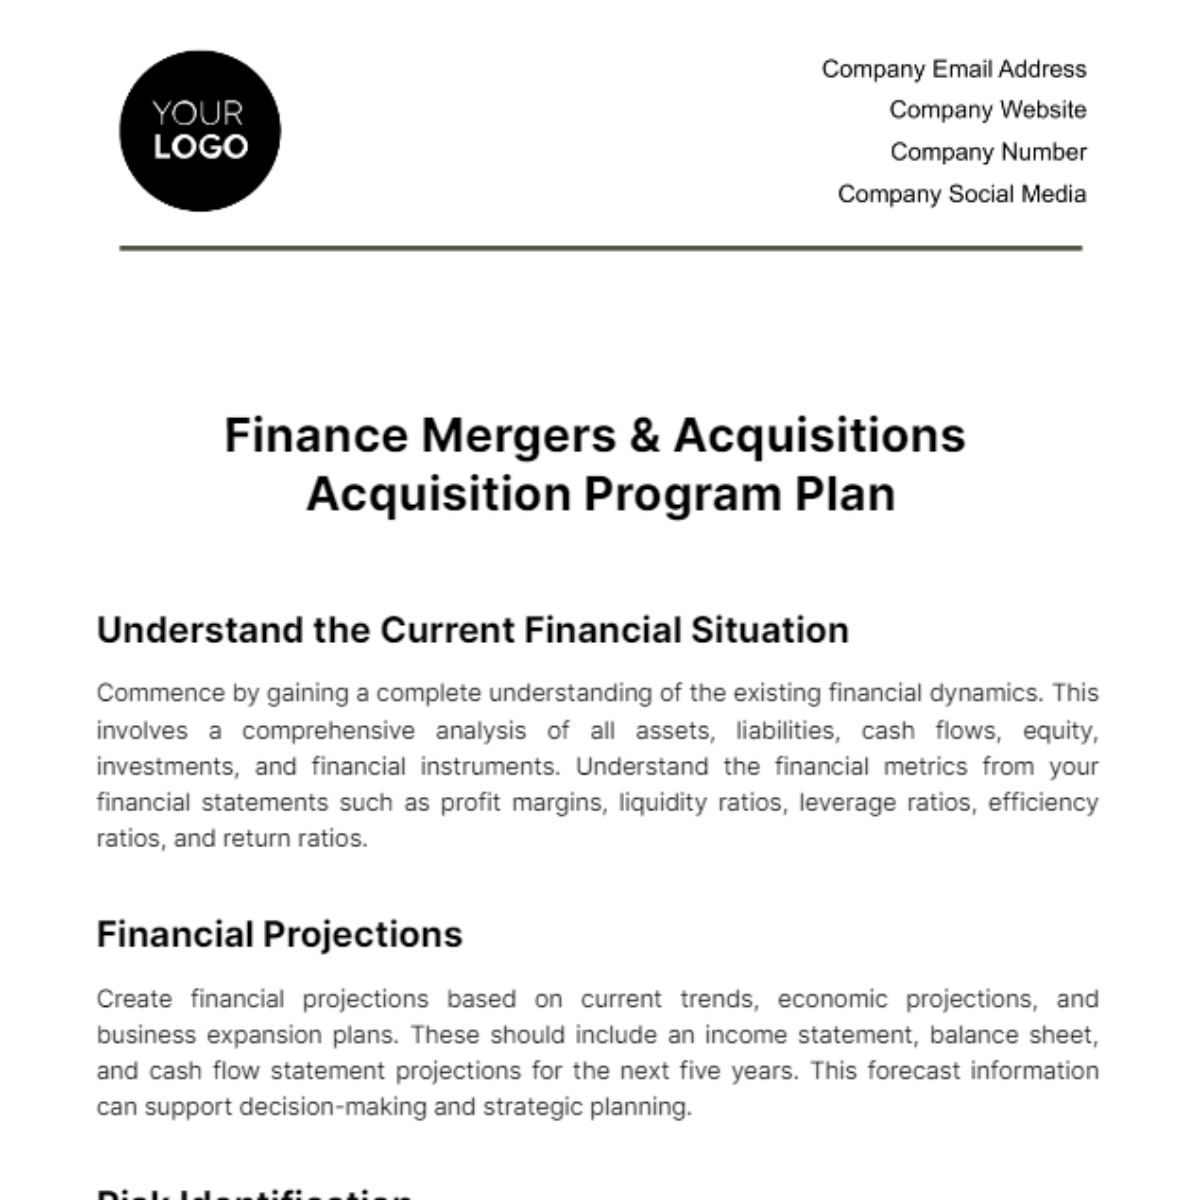 Finance Mergers & Acquisitions Acquisition Program Plan Template